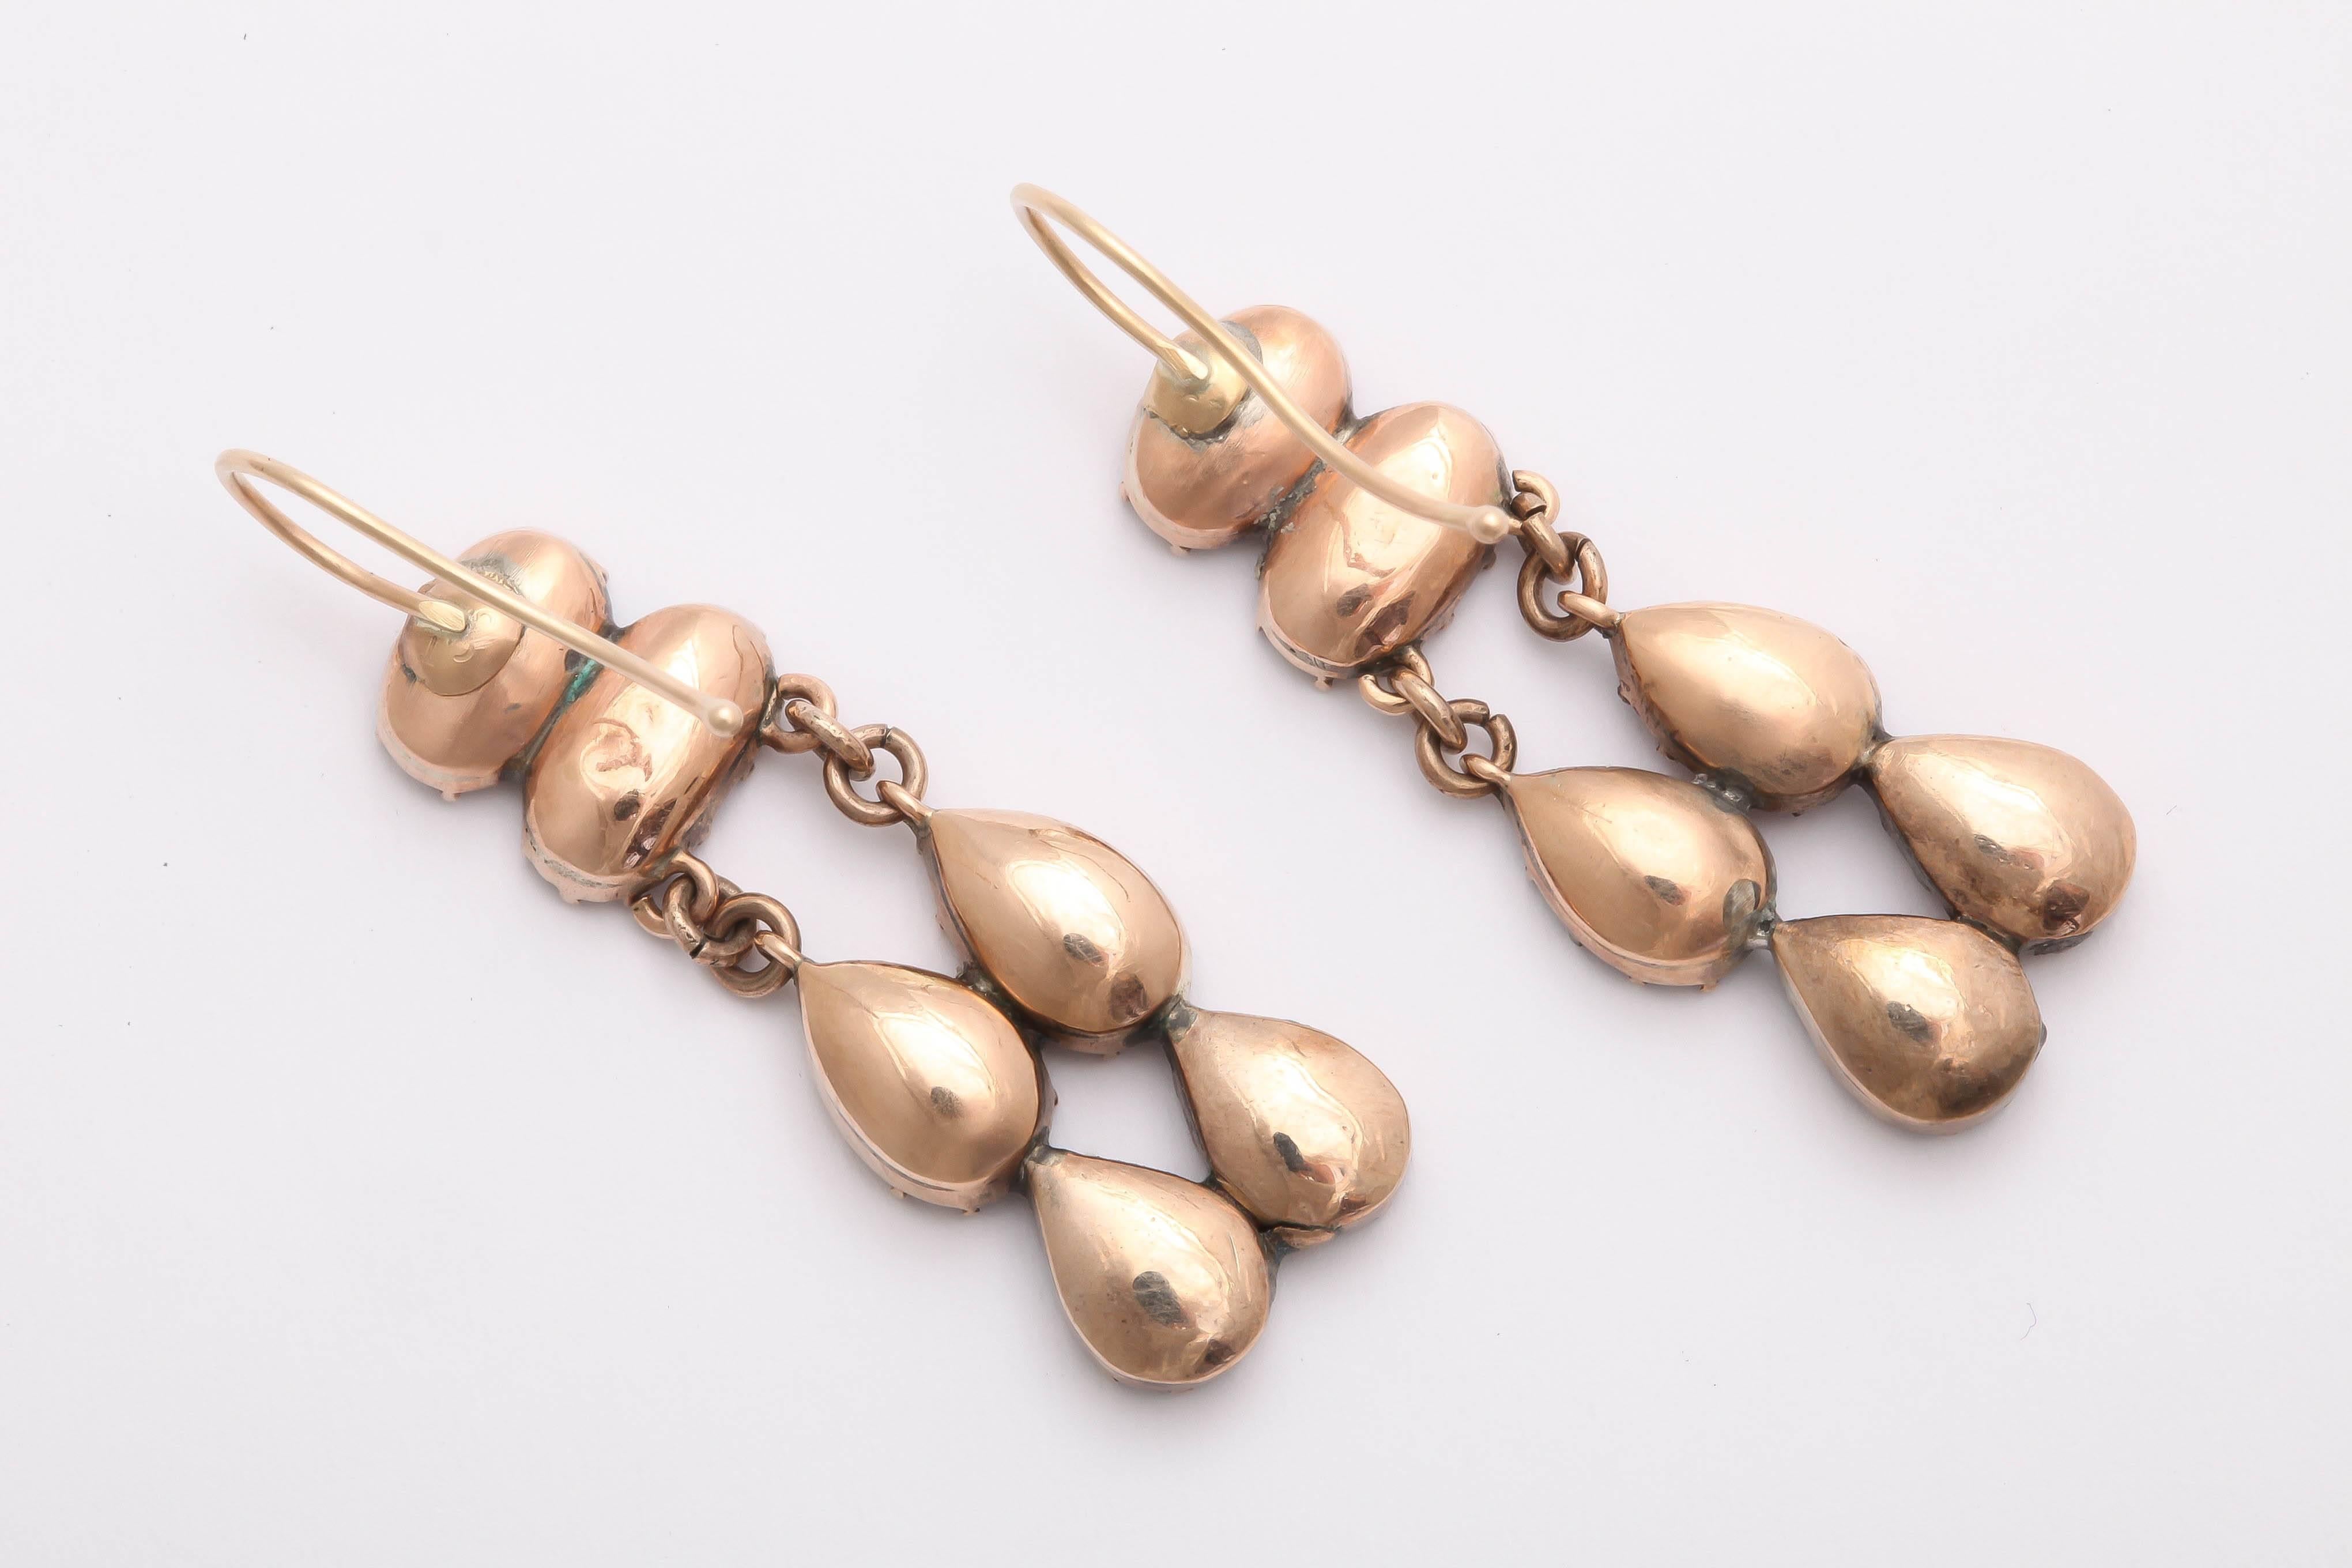 Elegant dangle drop earrings featuring almandine garnets in oval and teardrop shapes, set in 9K gold. From Georgian-era Britain.